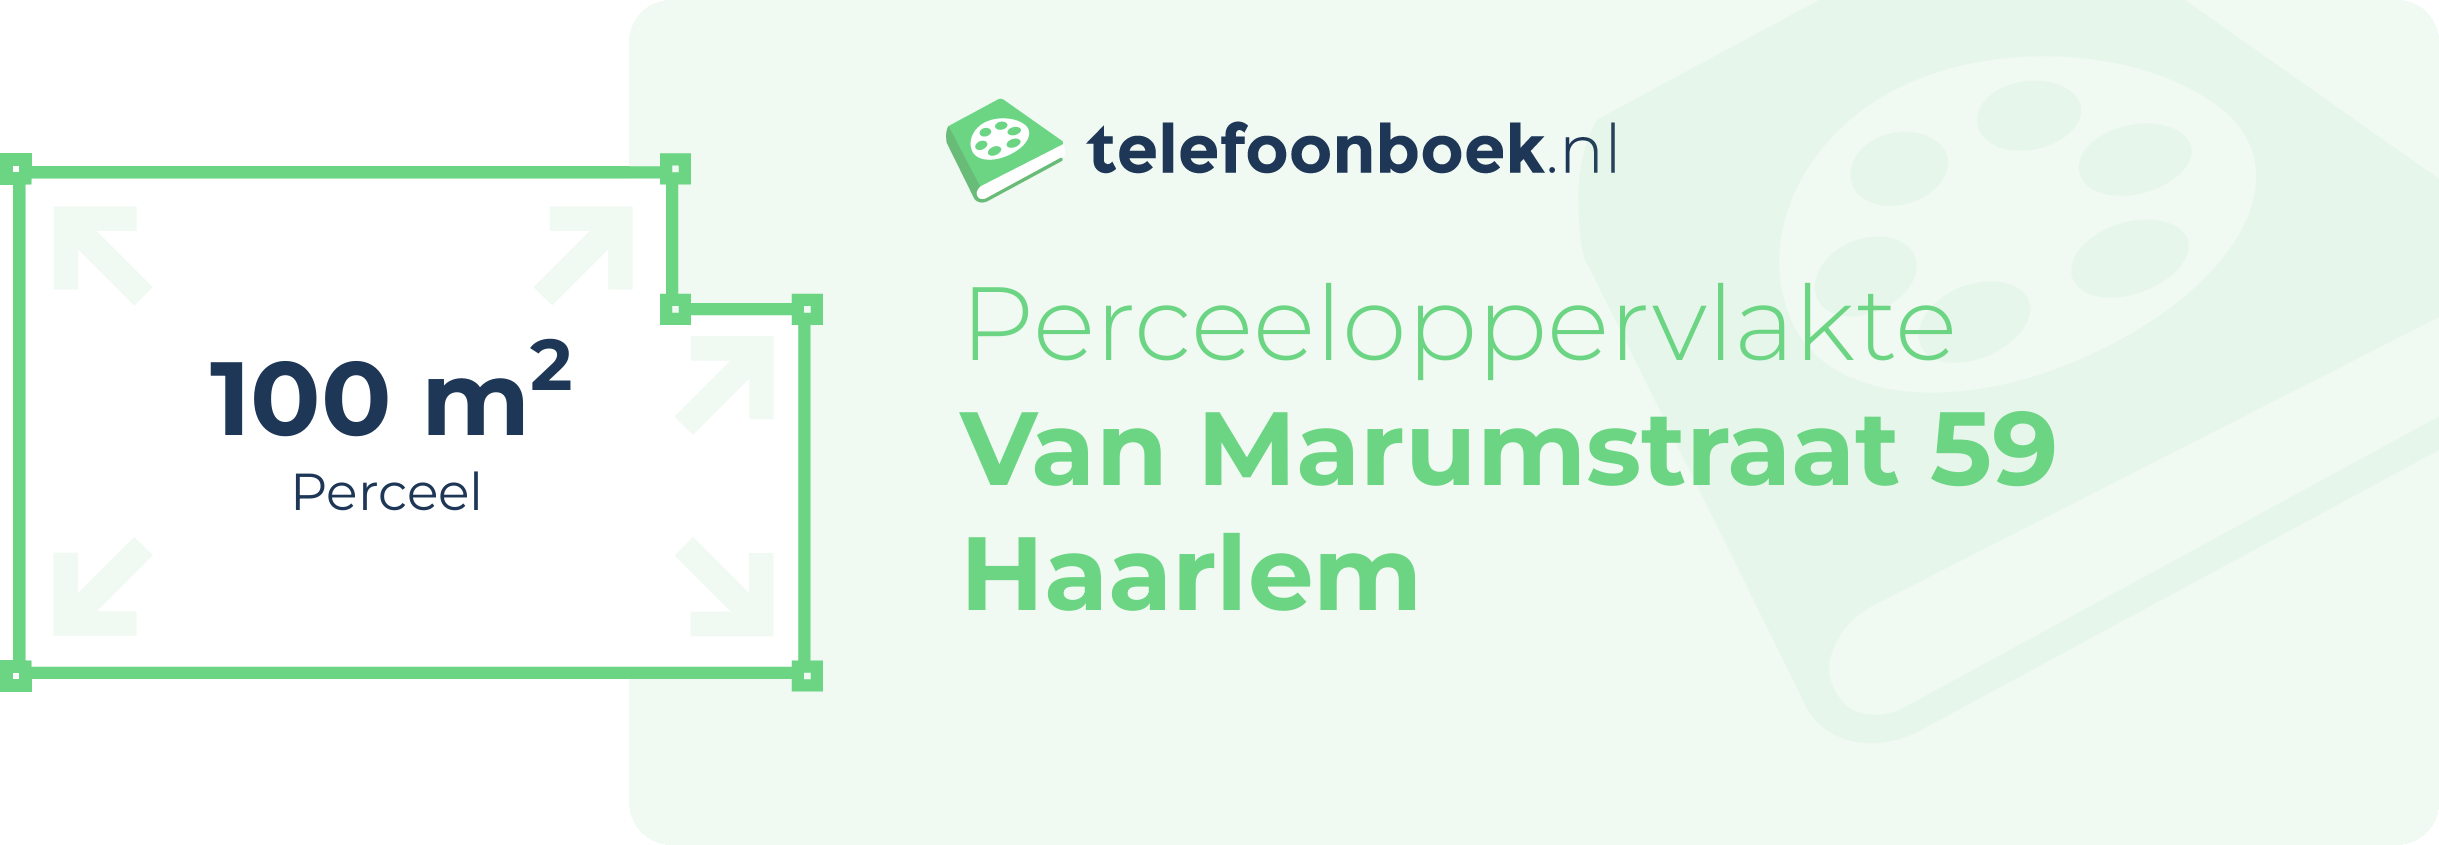 Perceeloppervlakte Van Marumstraat 59 Haarlem